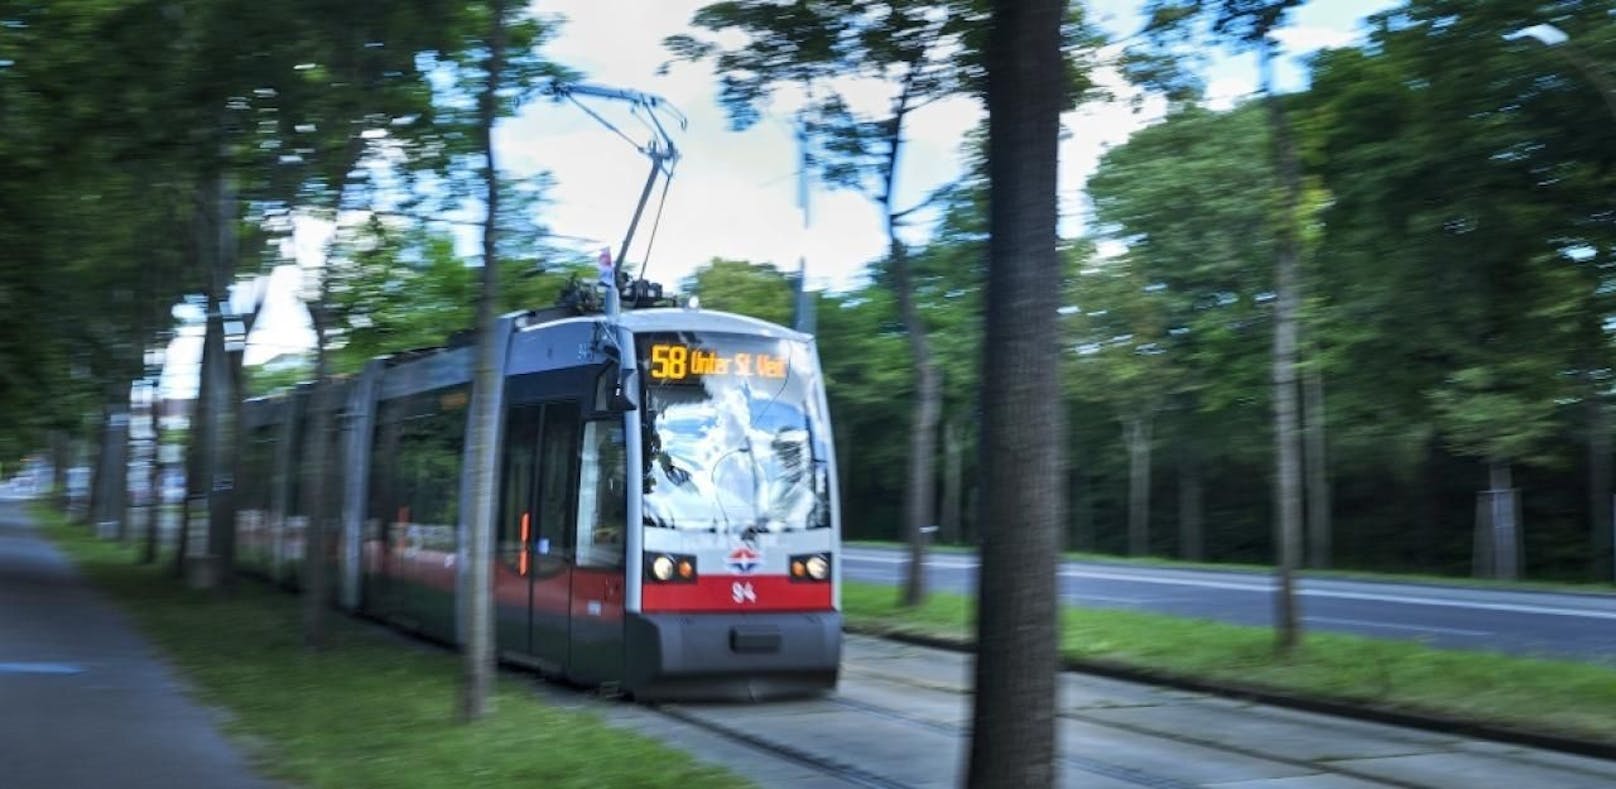 Straßenbahn der Linie 58